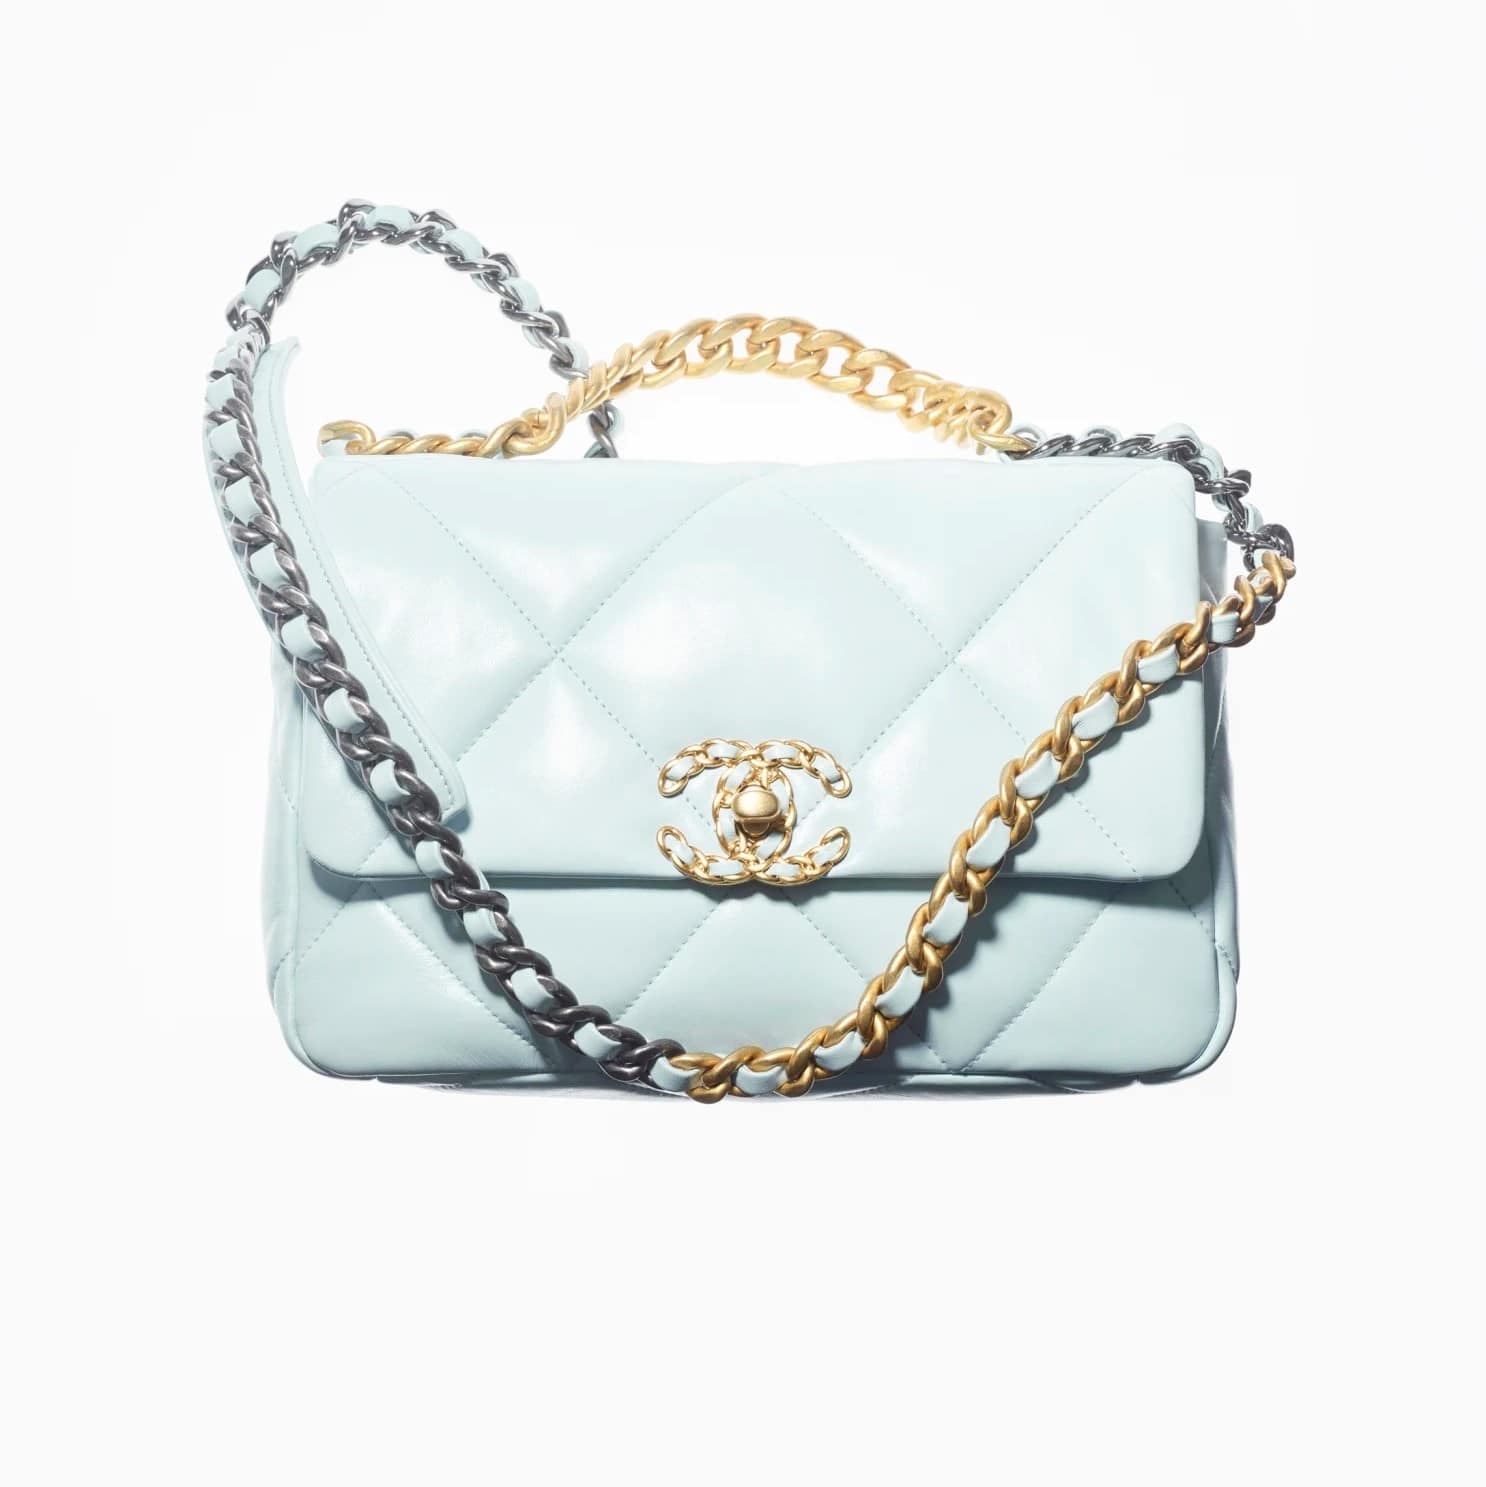 Chanel 19 Light Blue Lambskin Handbag